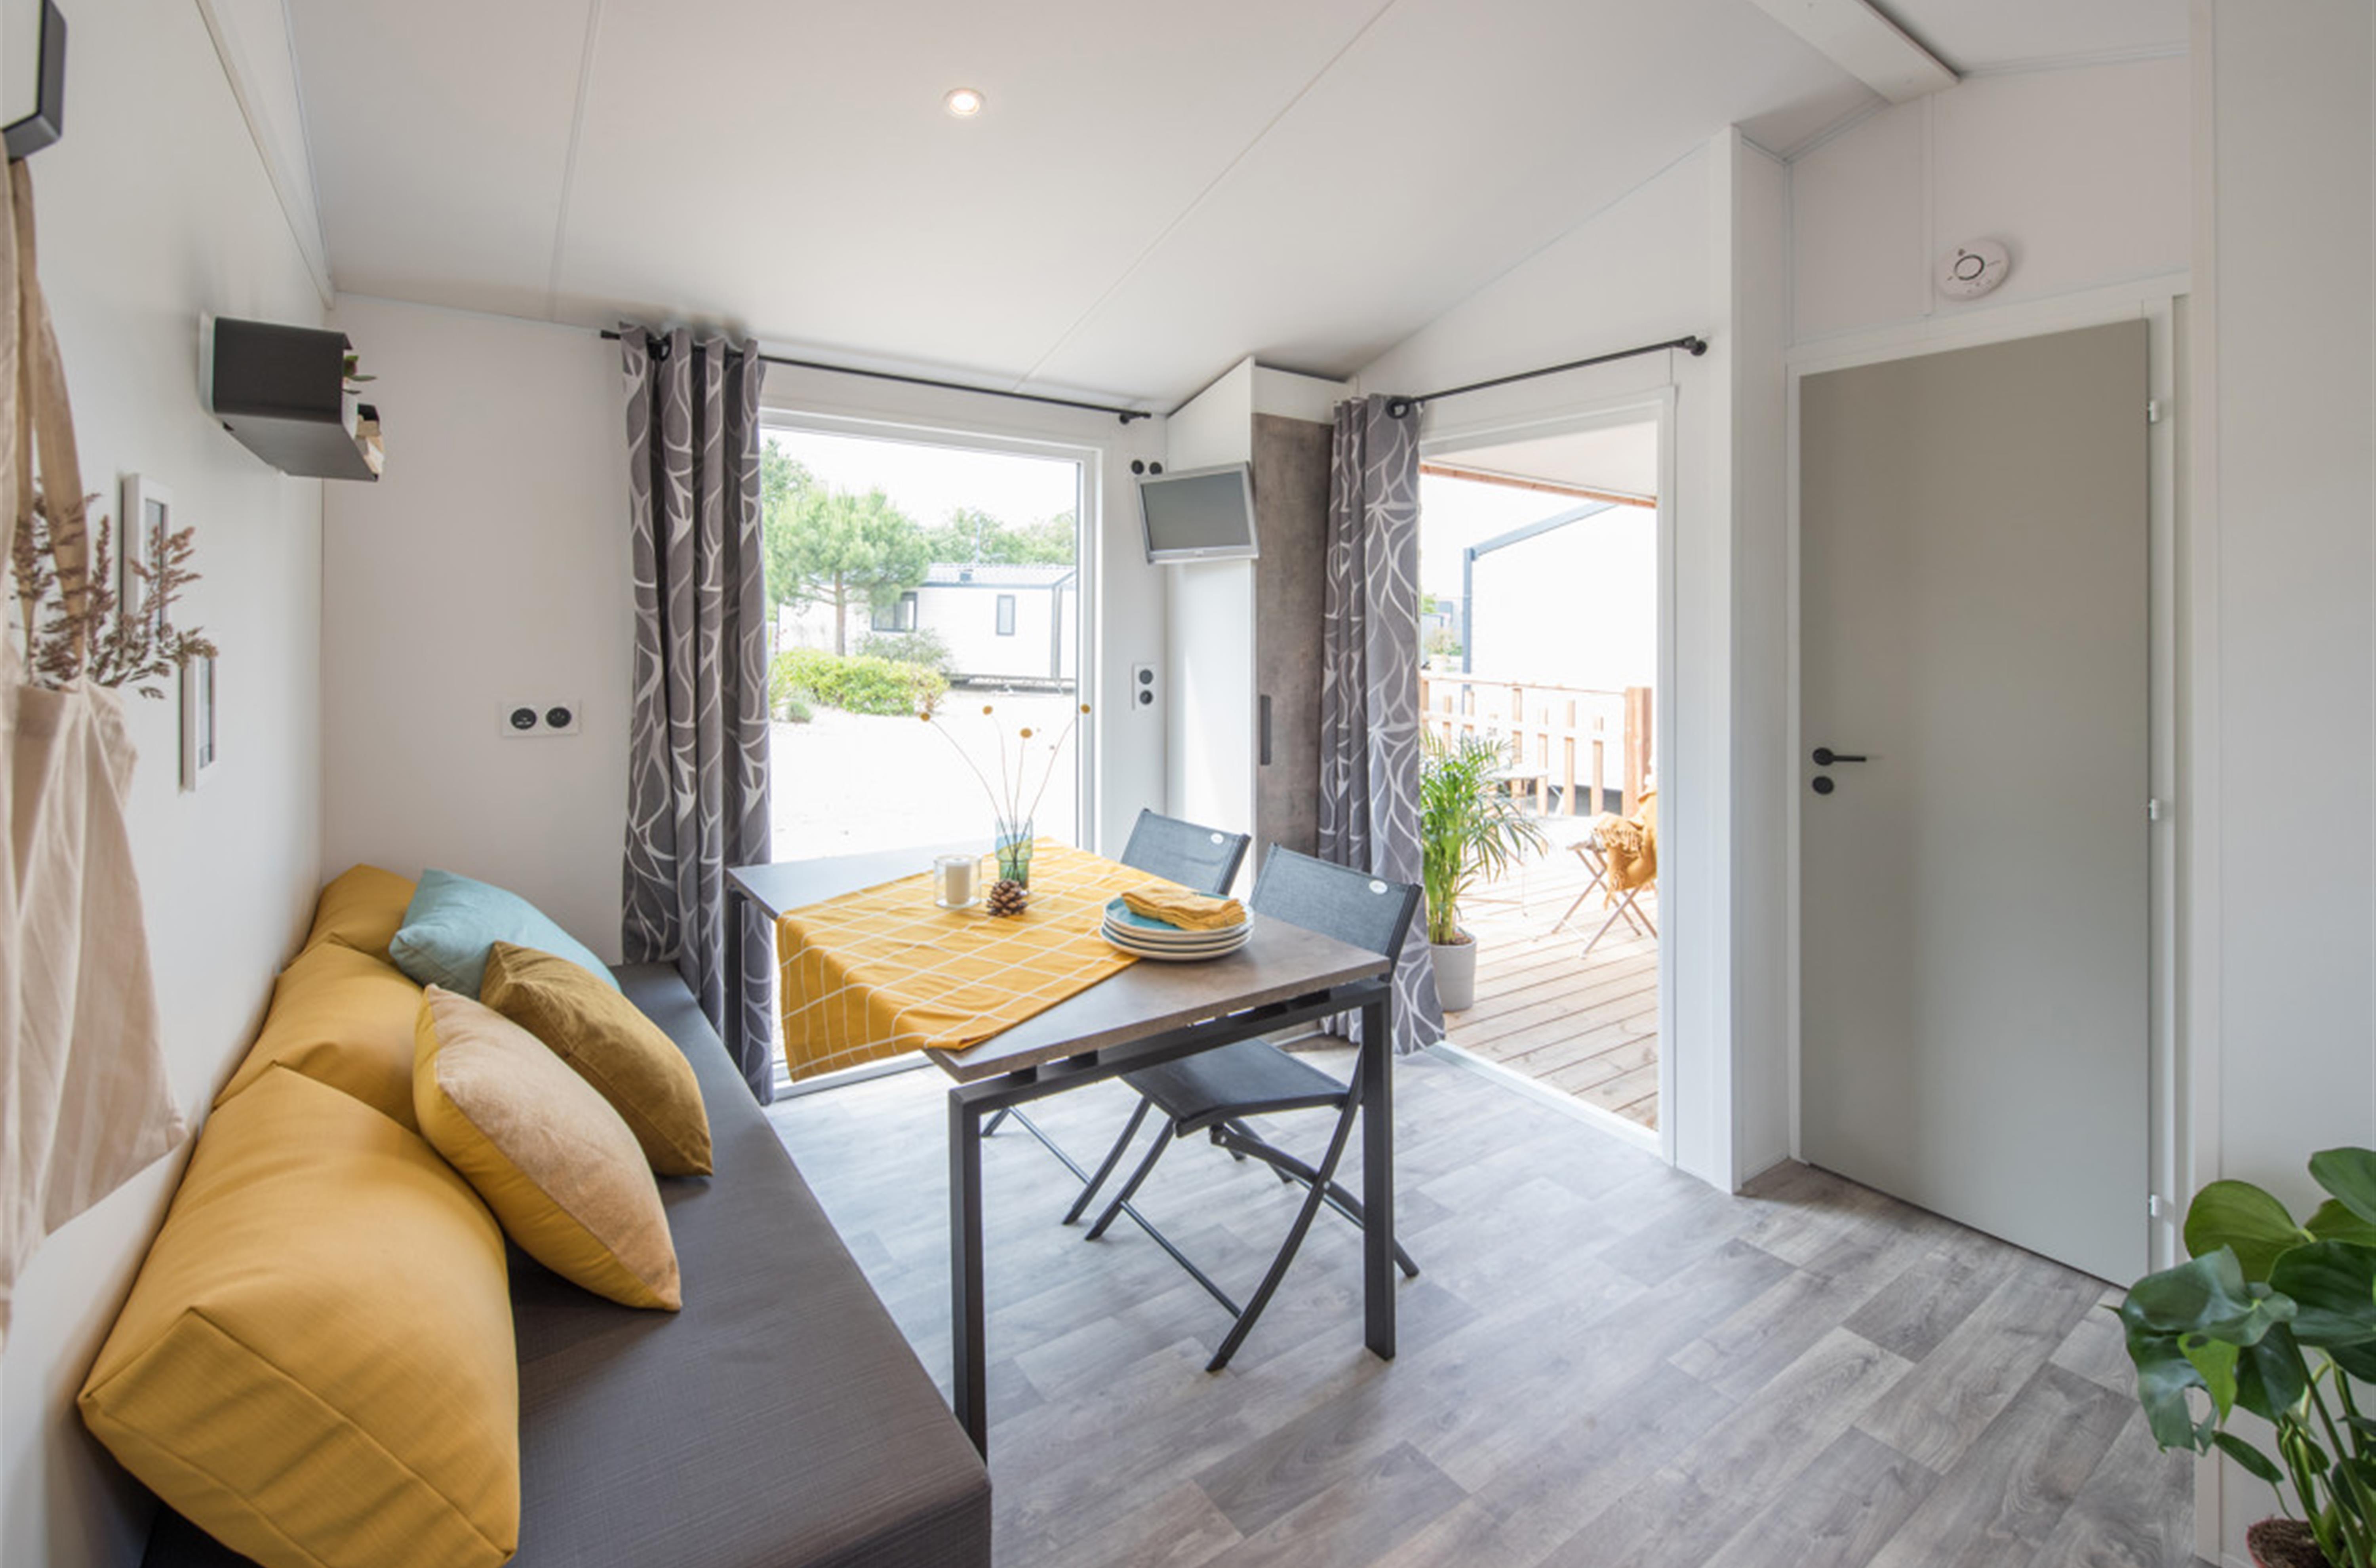 Living-room in chalet "Club" Campsite de la plage 29950 Benodet